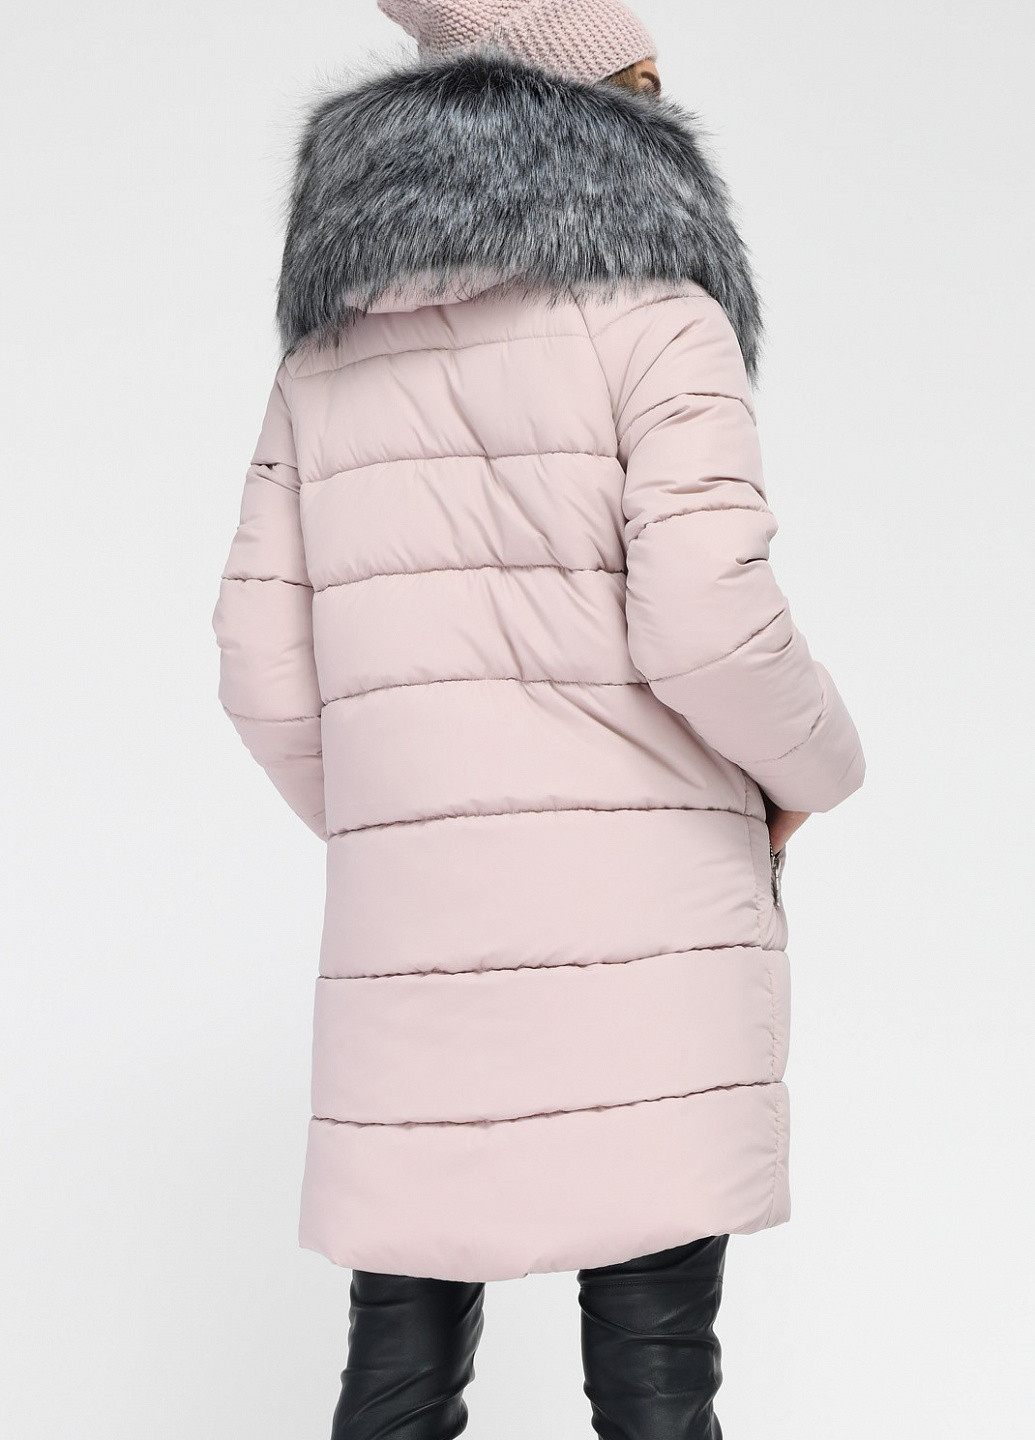 Бледно-розовая зимняя куртка X-Woyz